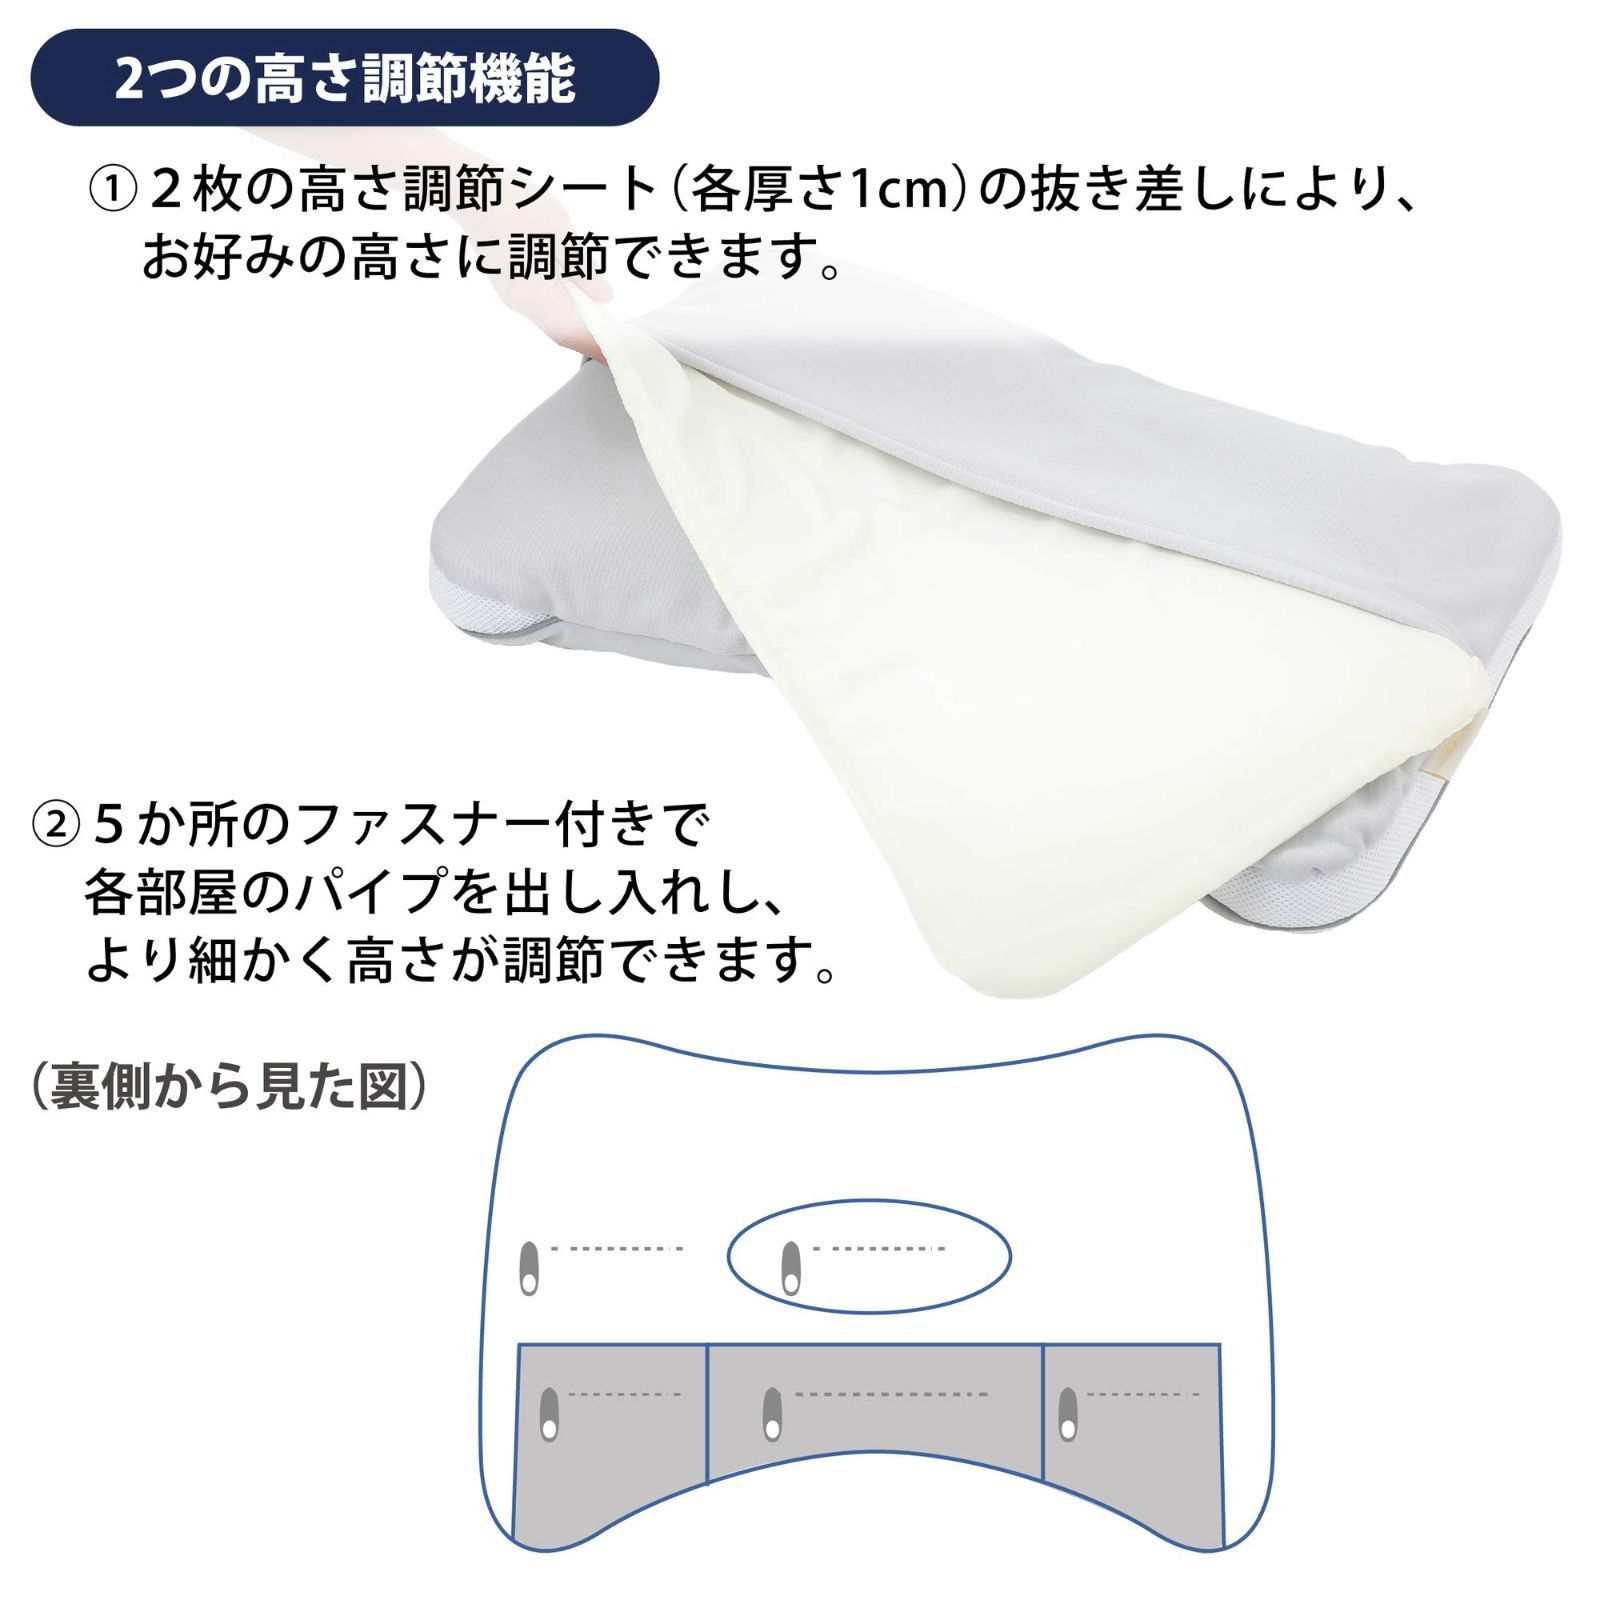 西川 (Nishikawa) 枕 ポリエステル 首と頭を支える 2層構造 立体キルト 横向き寝しやすい 肩口にフィット 高さ調節できる 洗える 日本製 - 4